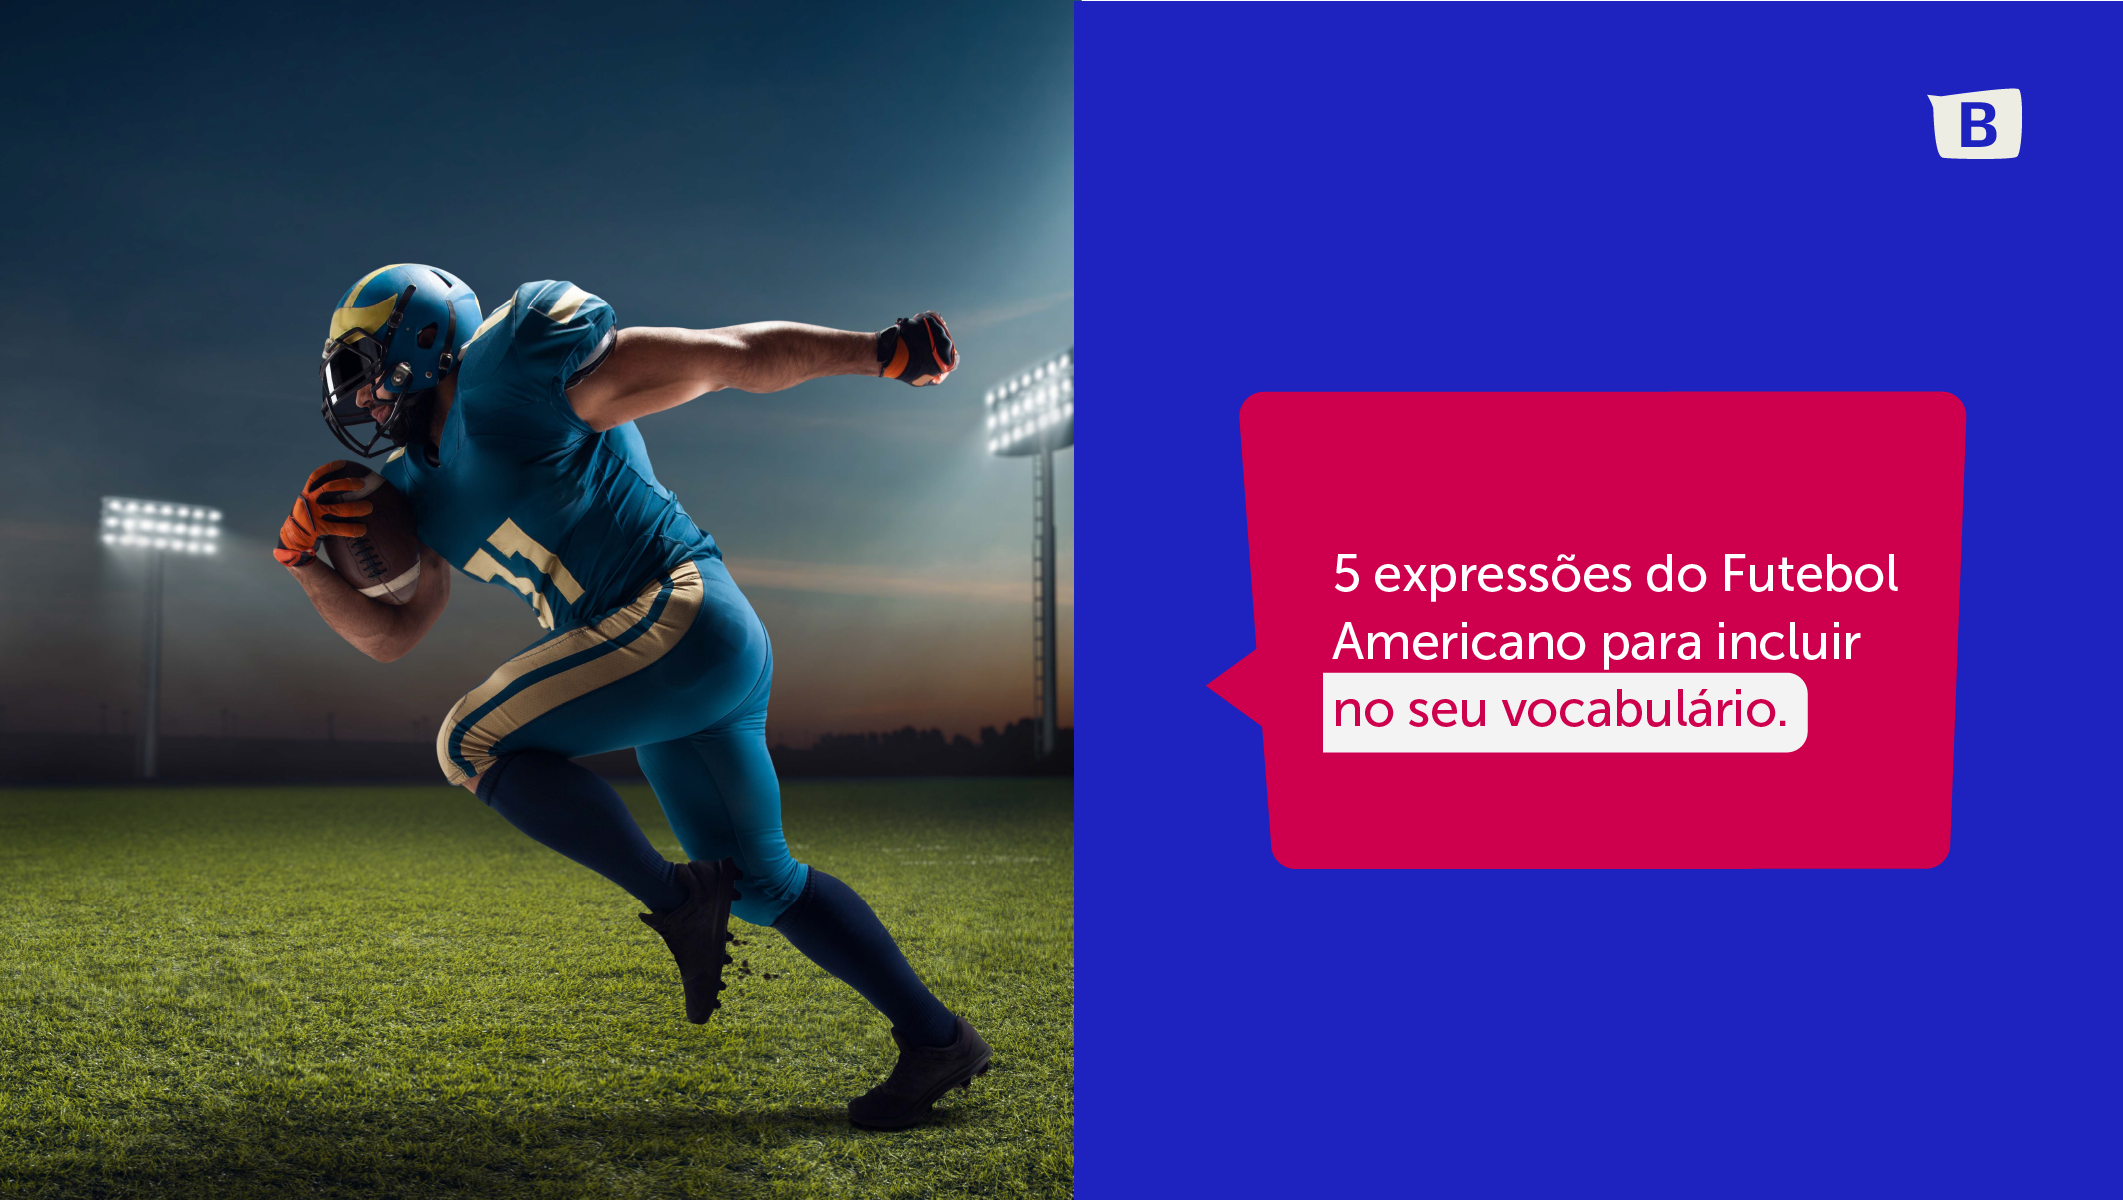 Expanda o seu vocabulário com expressões do esporte mais assistido dos EUA. 2